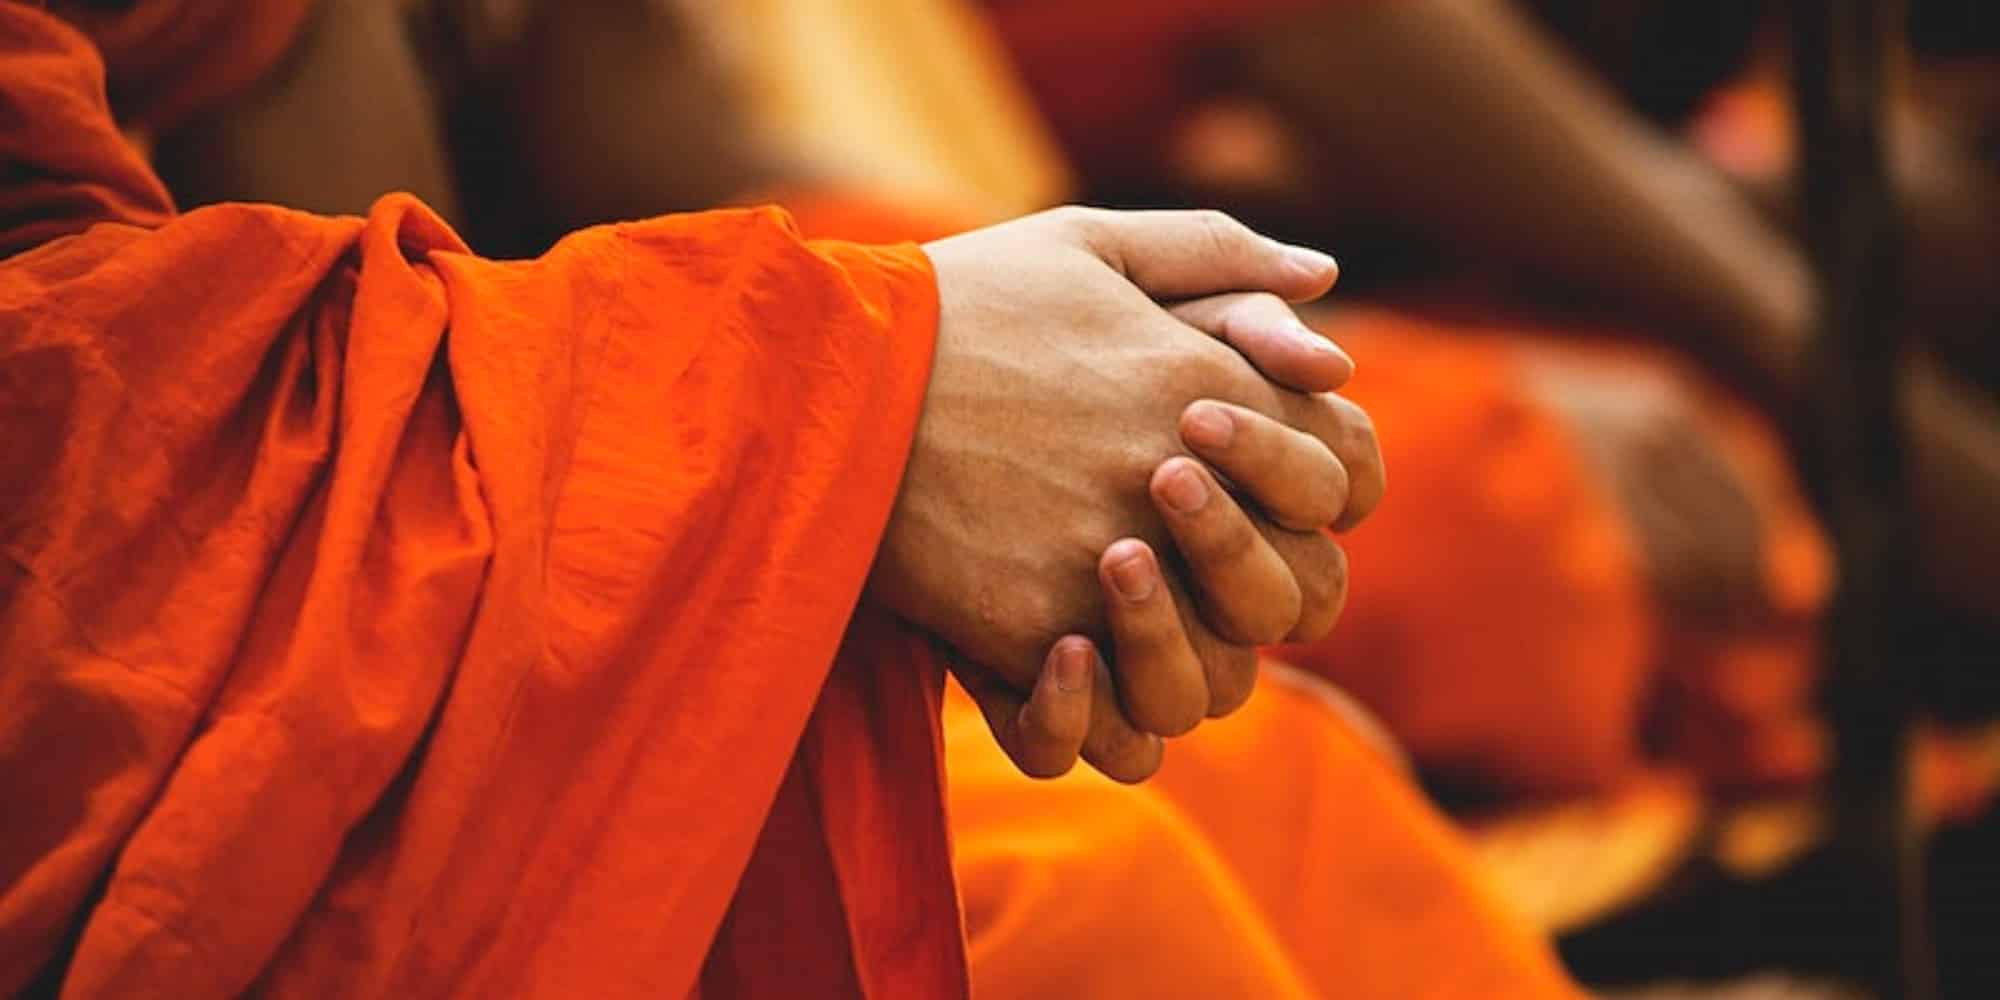 Βουδιστής μοναχός